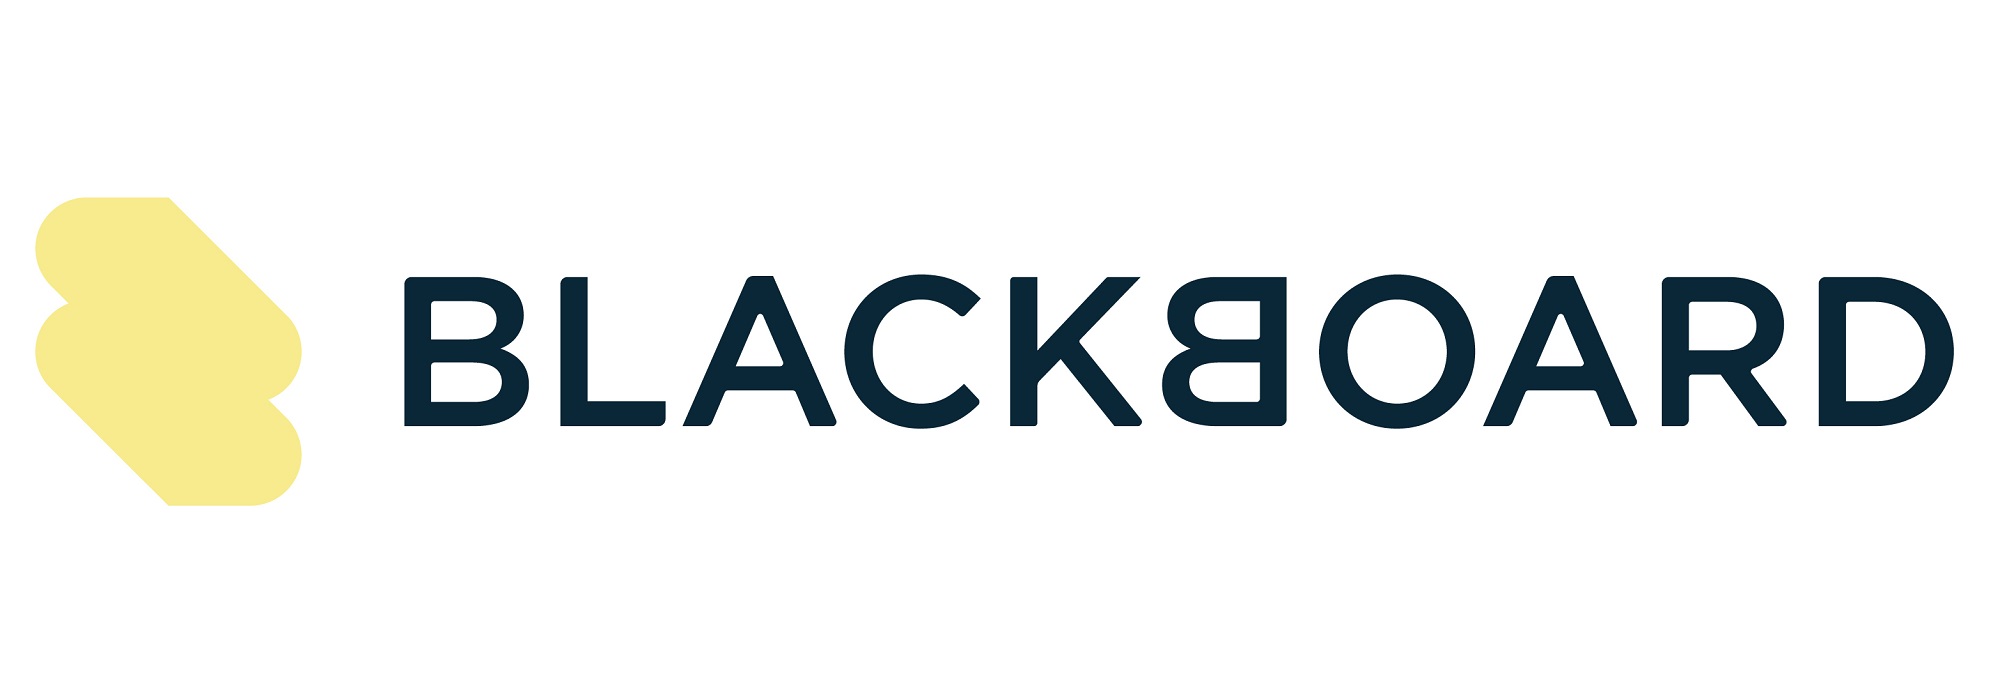 AIG’s Blackboard secures approval in Virginia